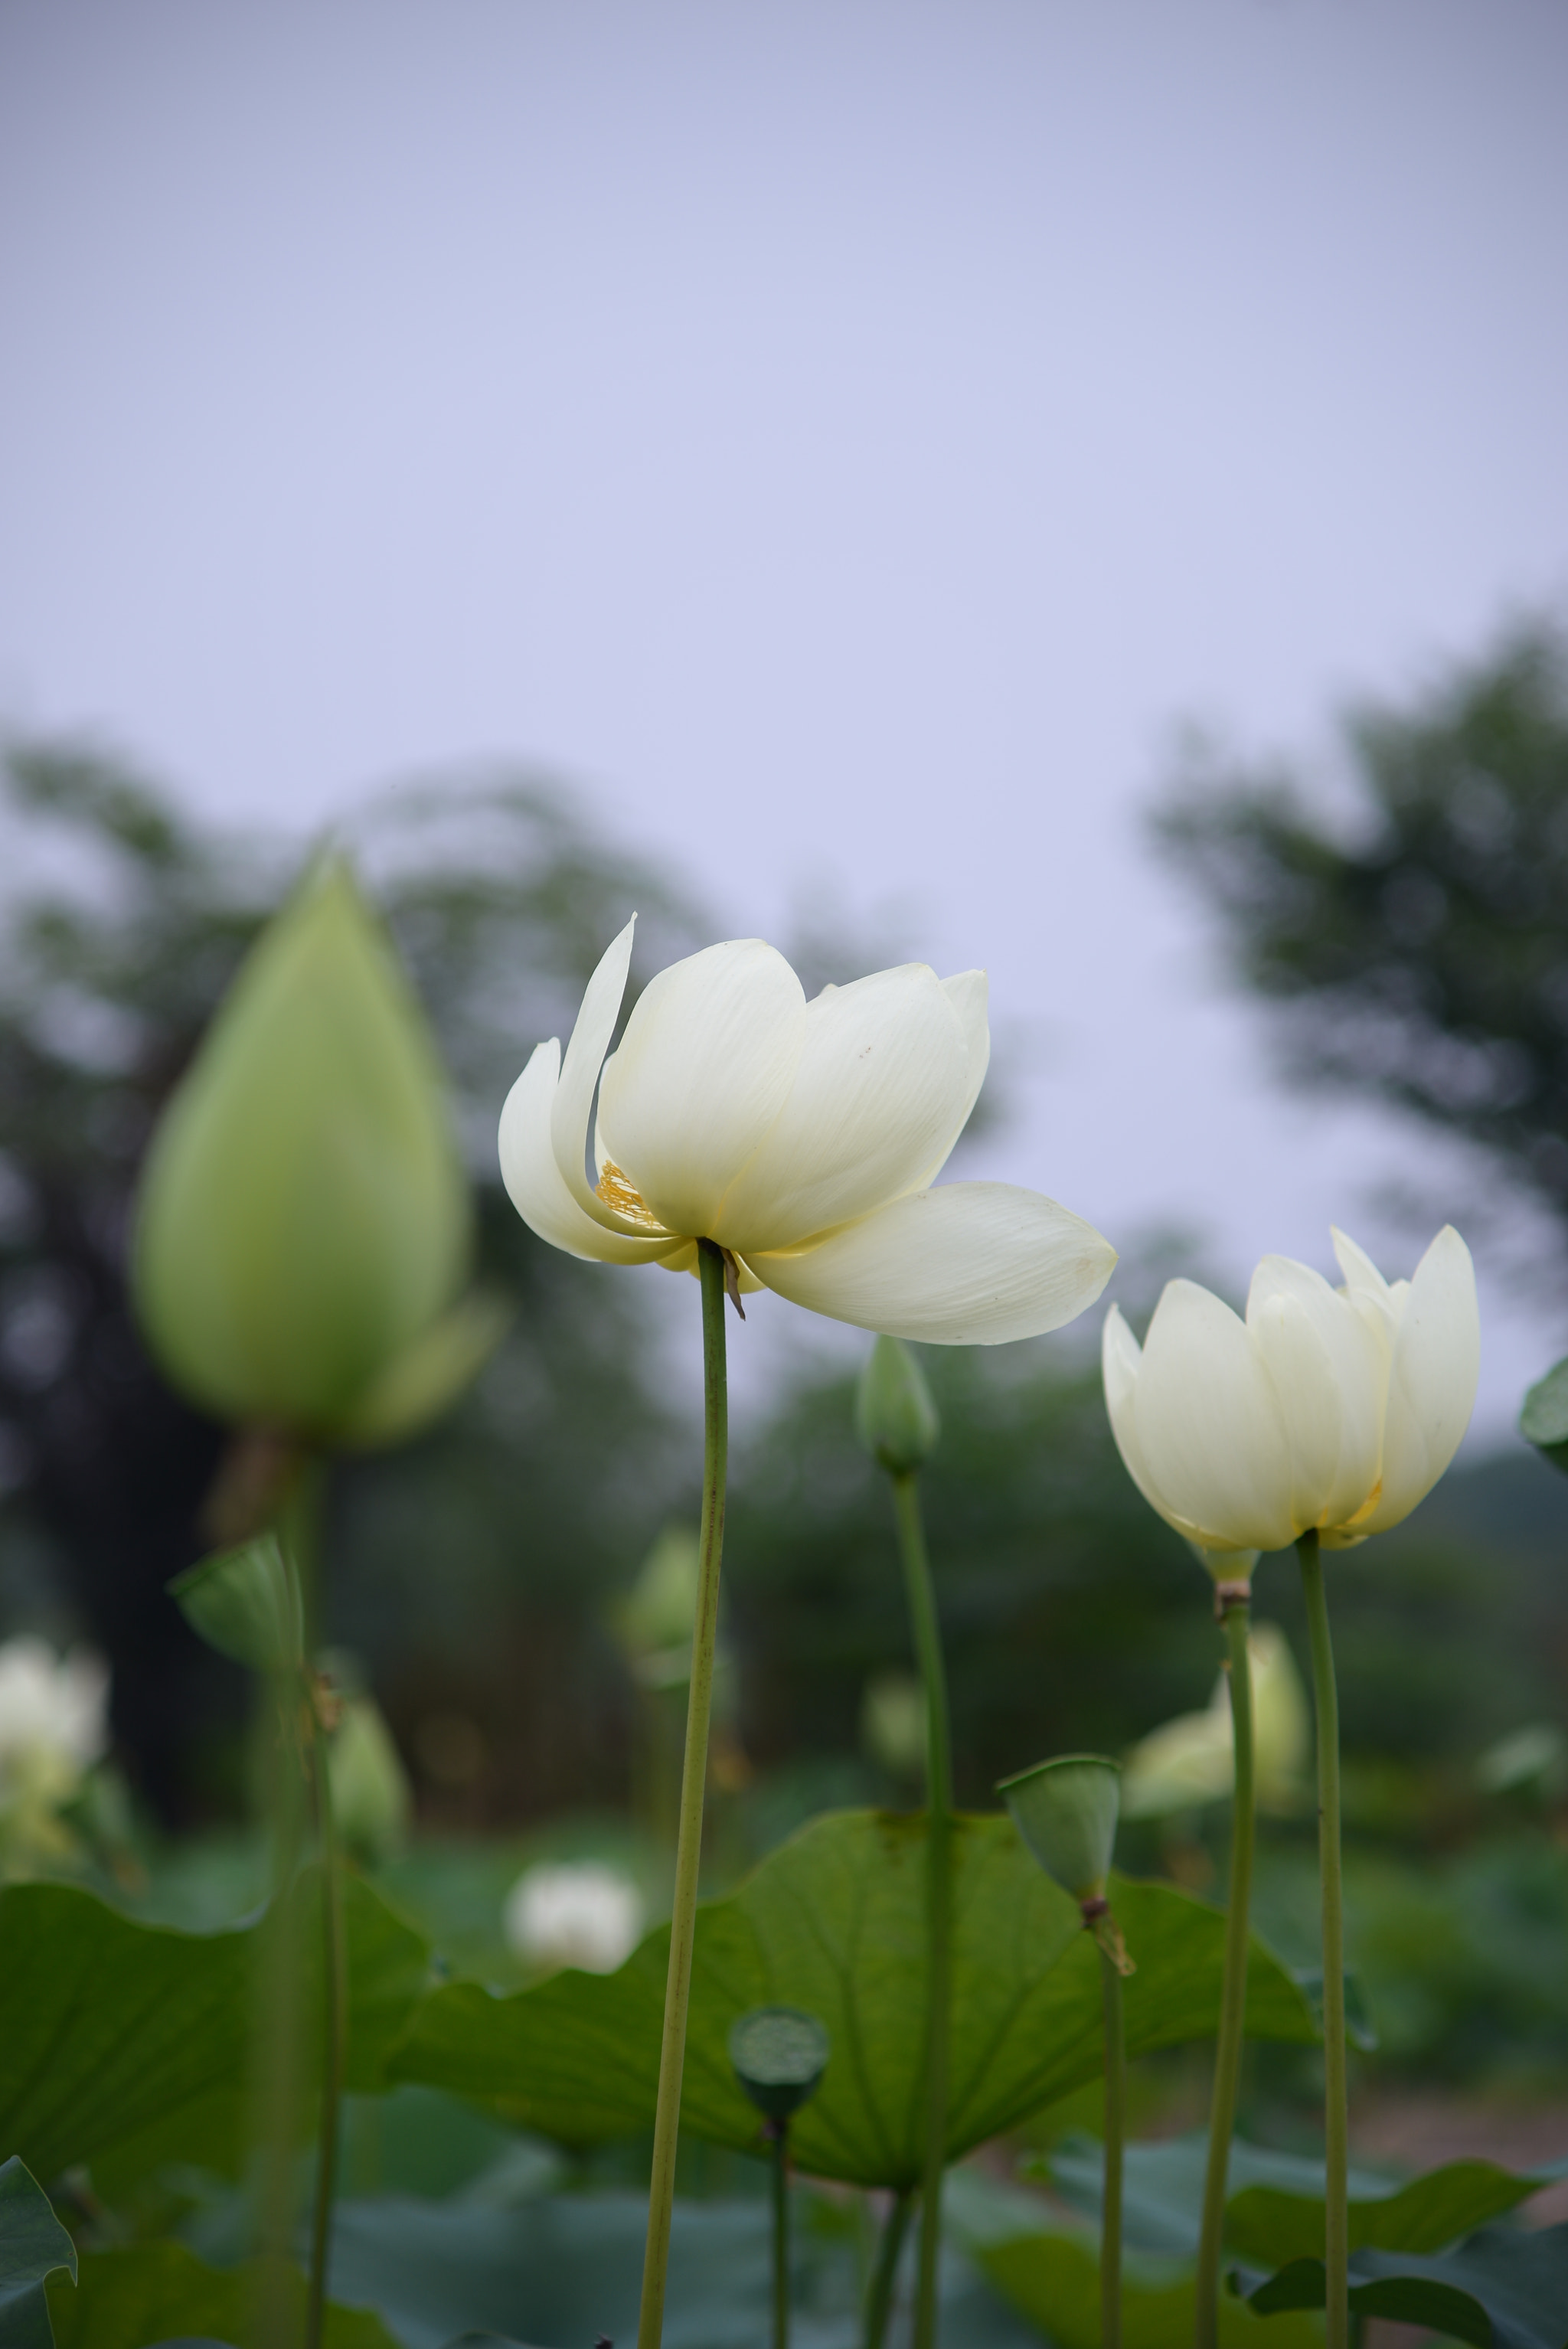 Nikon D610 + AF Zoom-Nikkor 70-210mm f/4 sample photo. 又是一年花开时，lotus flower photography